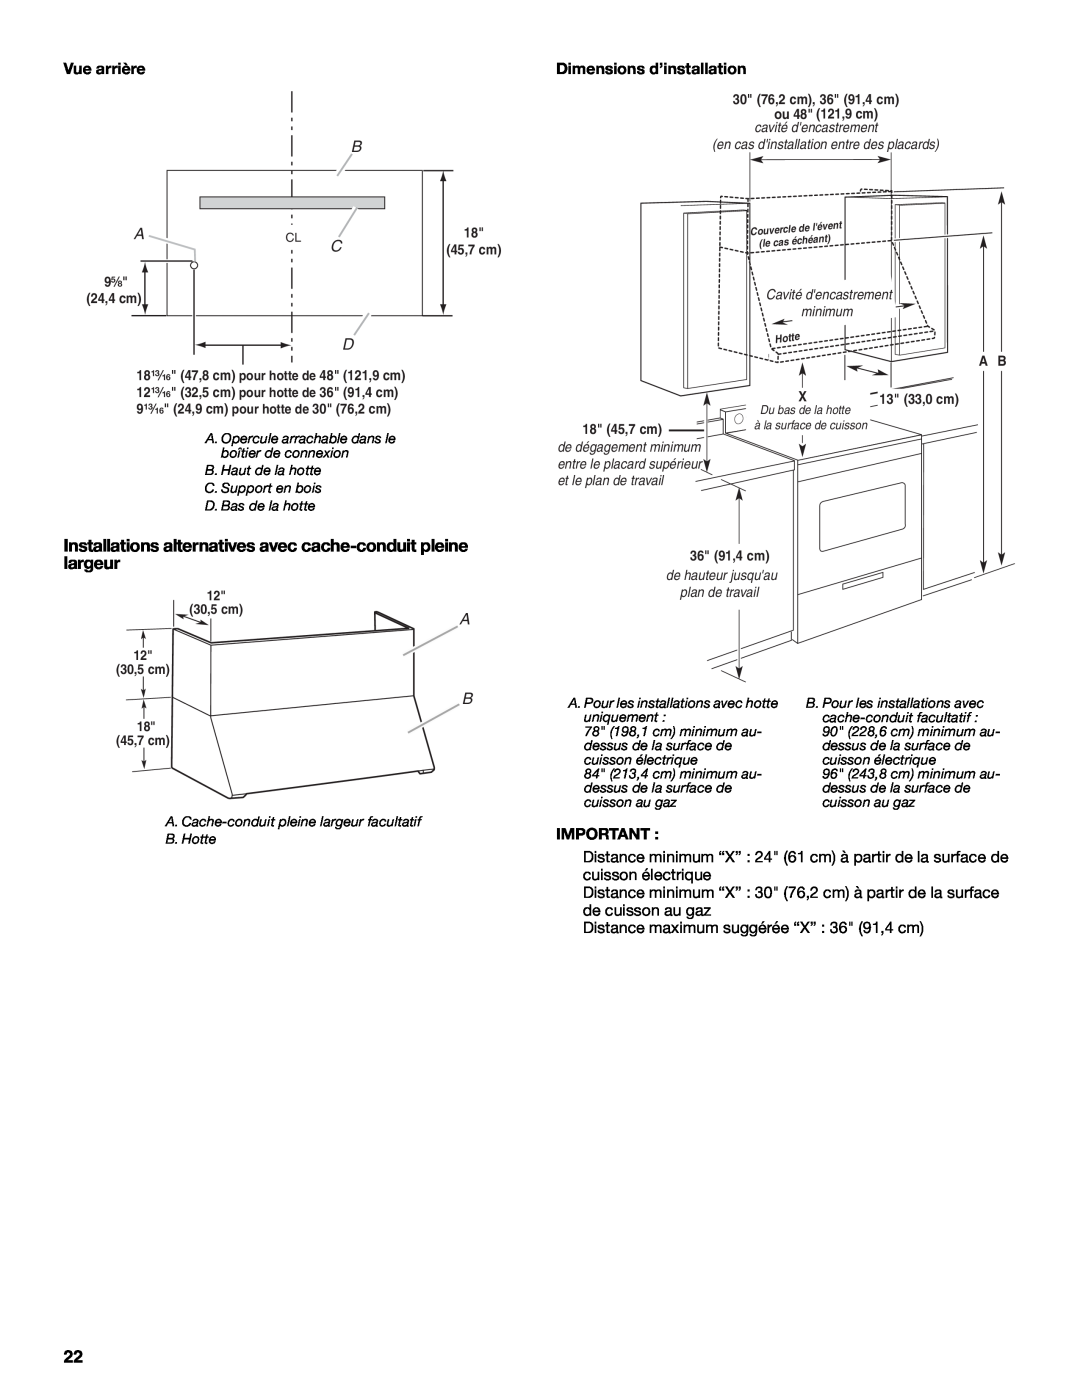 KitchenAid W10331007B Installations alternatives avec cache-conduit pleine largeur, Vue arrière, Dimensions d’installation 